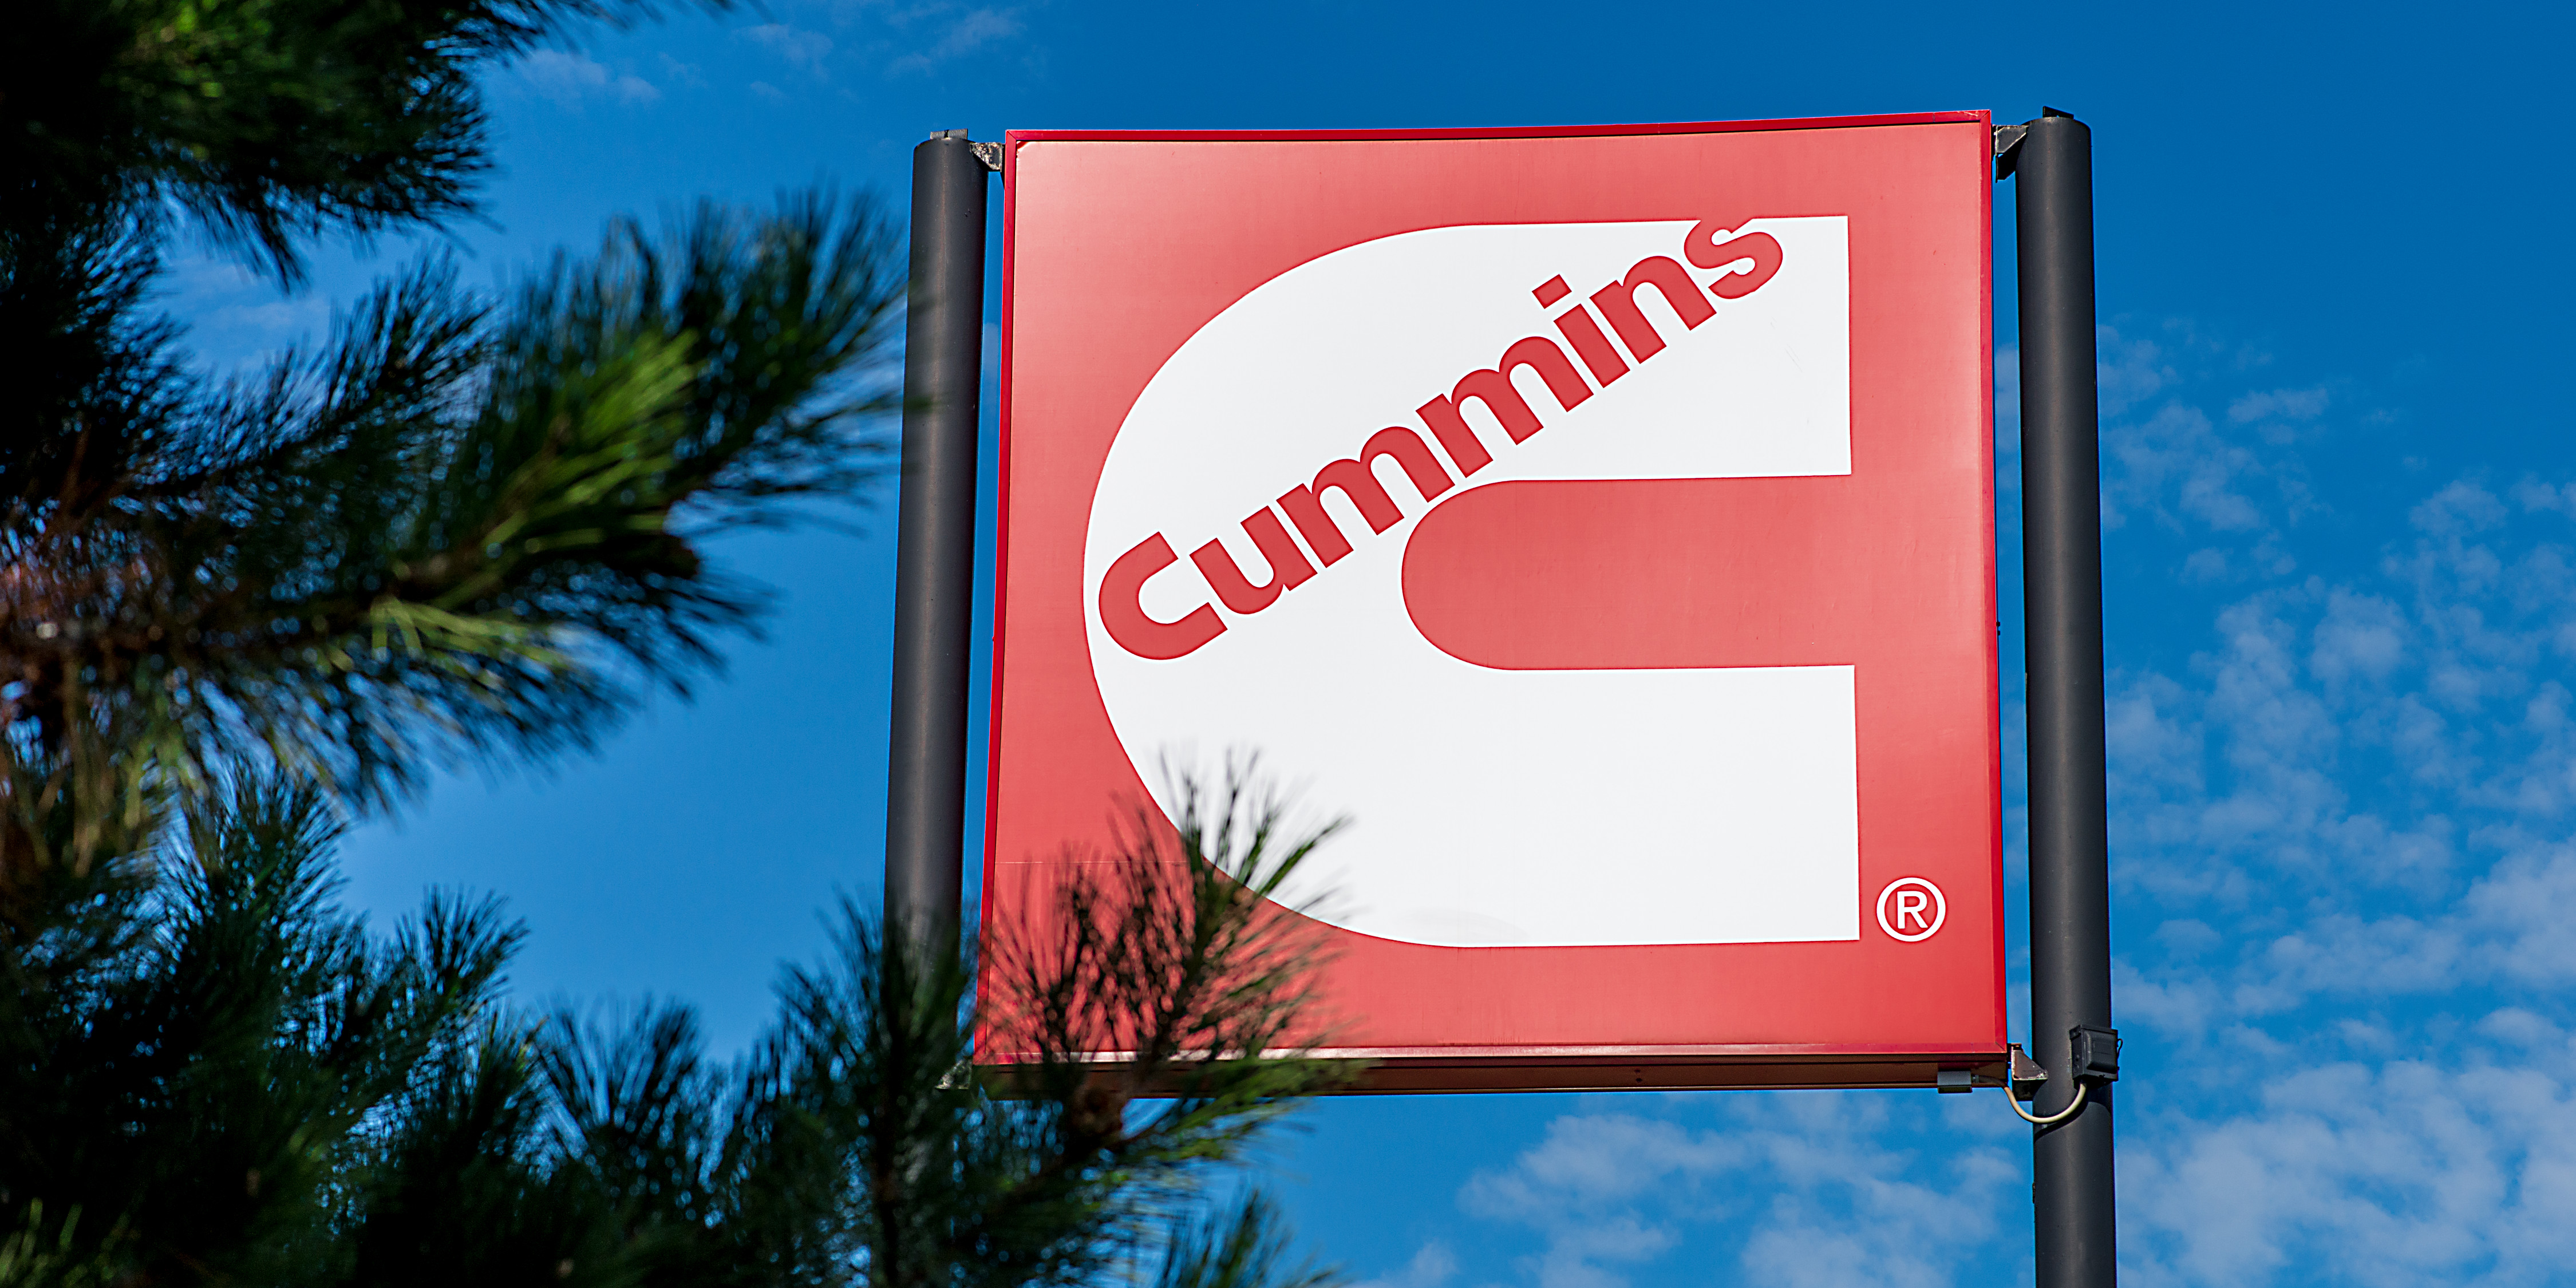 Компания Cummins Inc., являющаяся мировым лидером в сфере энергетики, представляет из себя корпорацию, состоящую из хорошо сочетающихся бизнес-подразделений, которые разрабатывают, производят, распространяют и обслуживают широкий ассортимент энергетических решений.